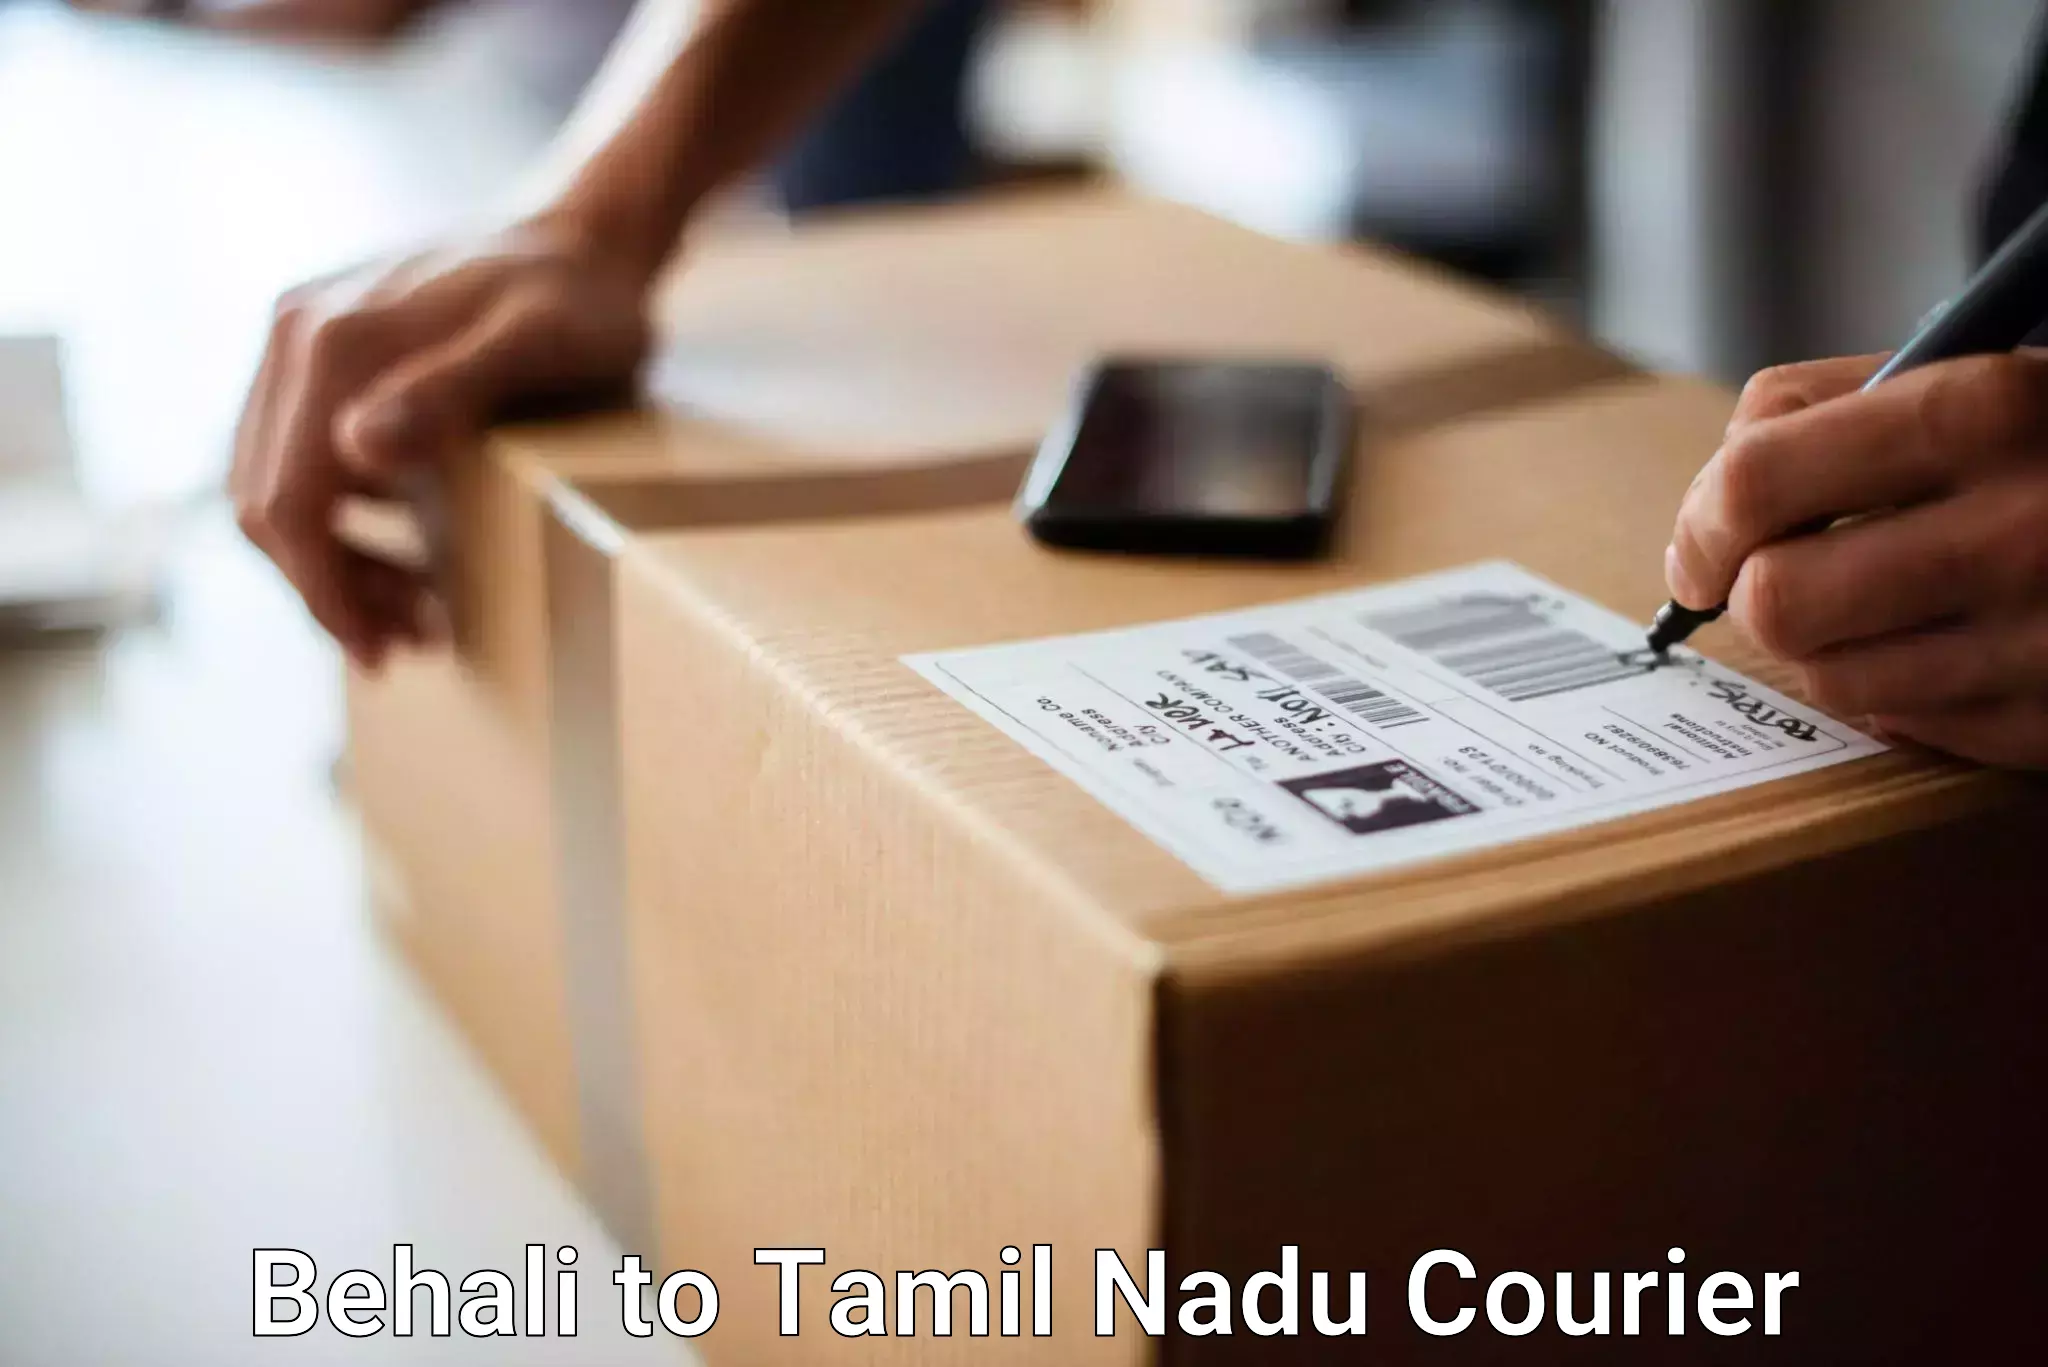 Urgent luggage shipment Behali to Tamil Nadu